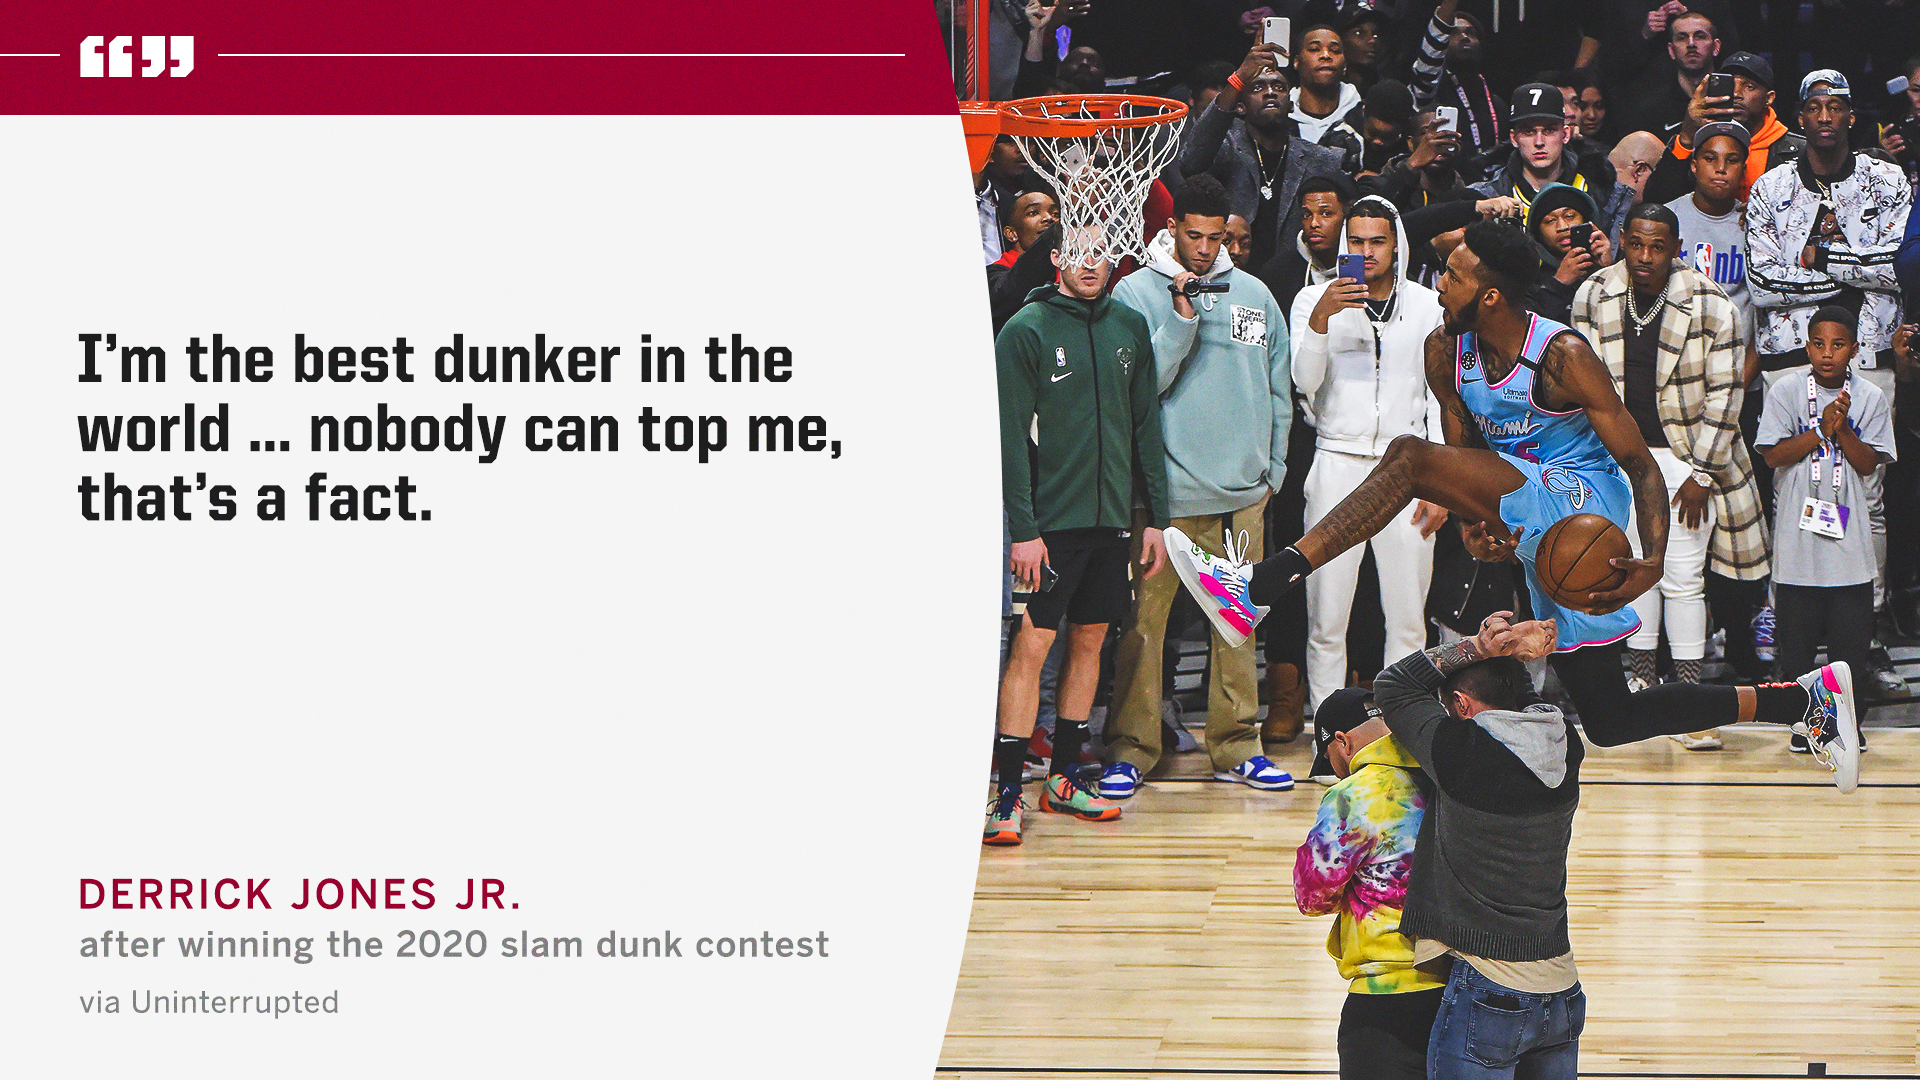 derrick jones jr dunk contest